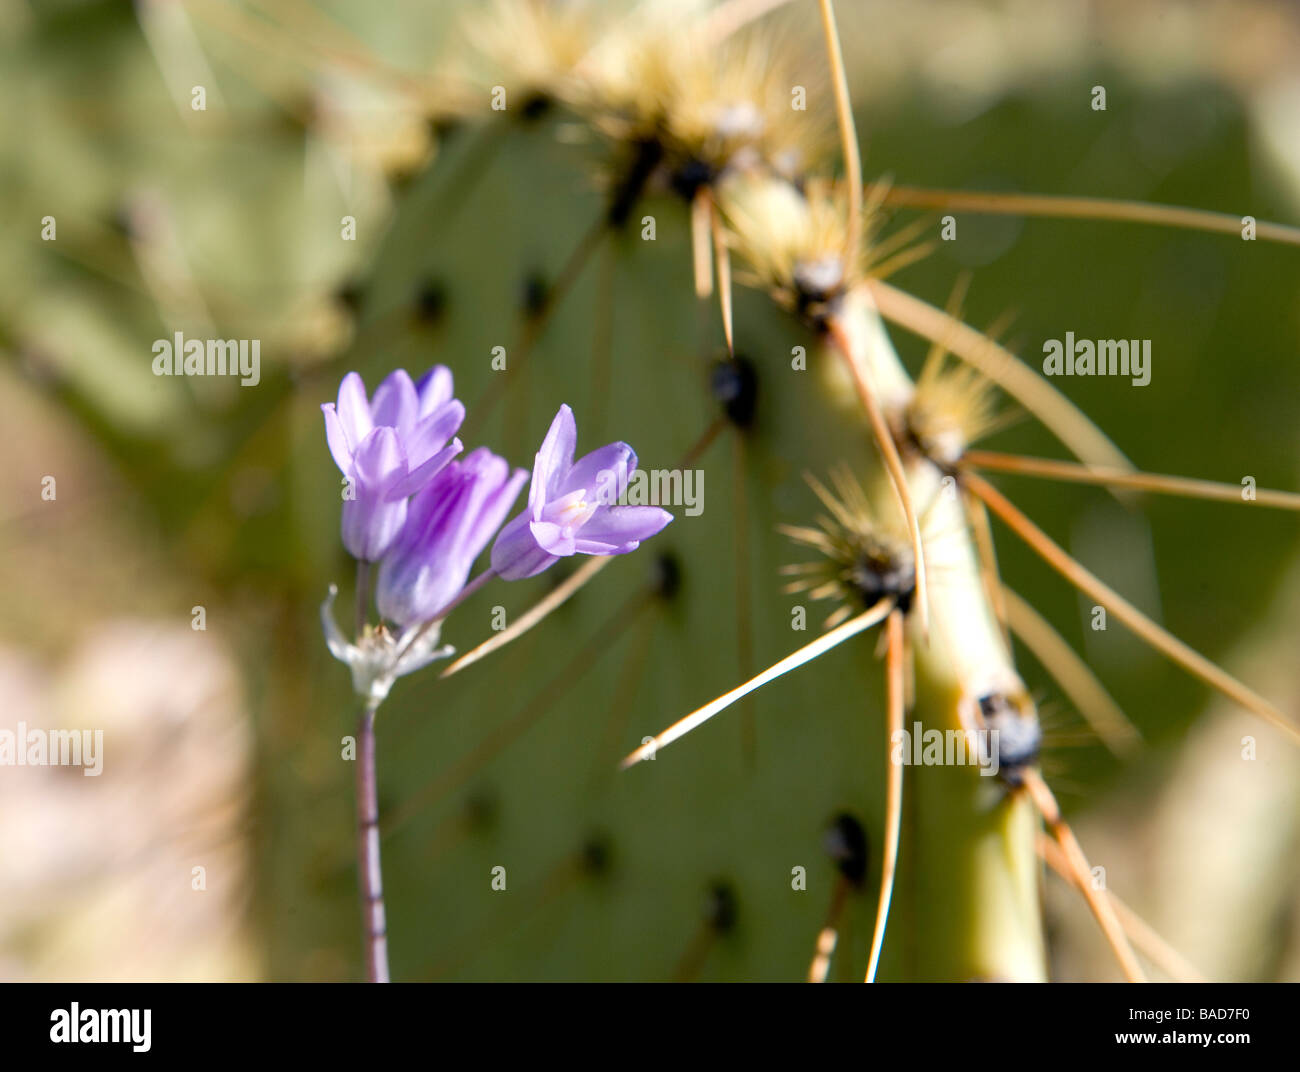 La cebolla salvaje púrpura pequeñas flores entre las espinas de un Nopal en Arizona Foto de stock